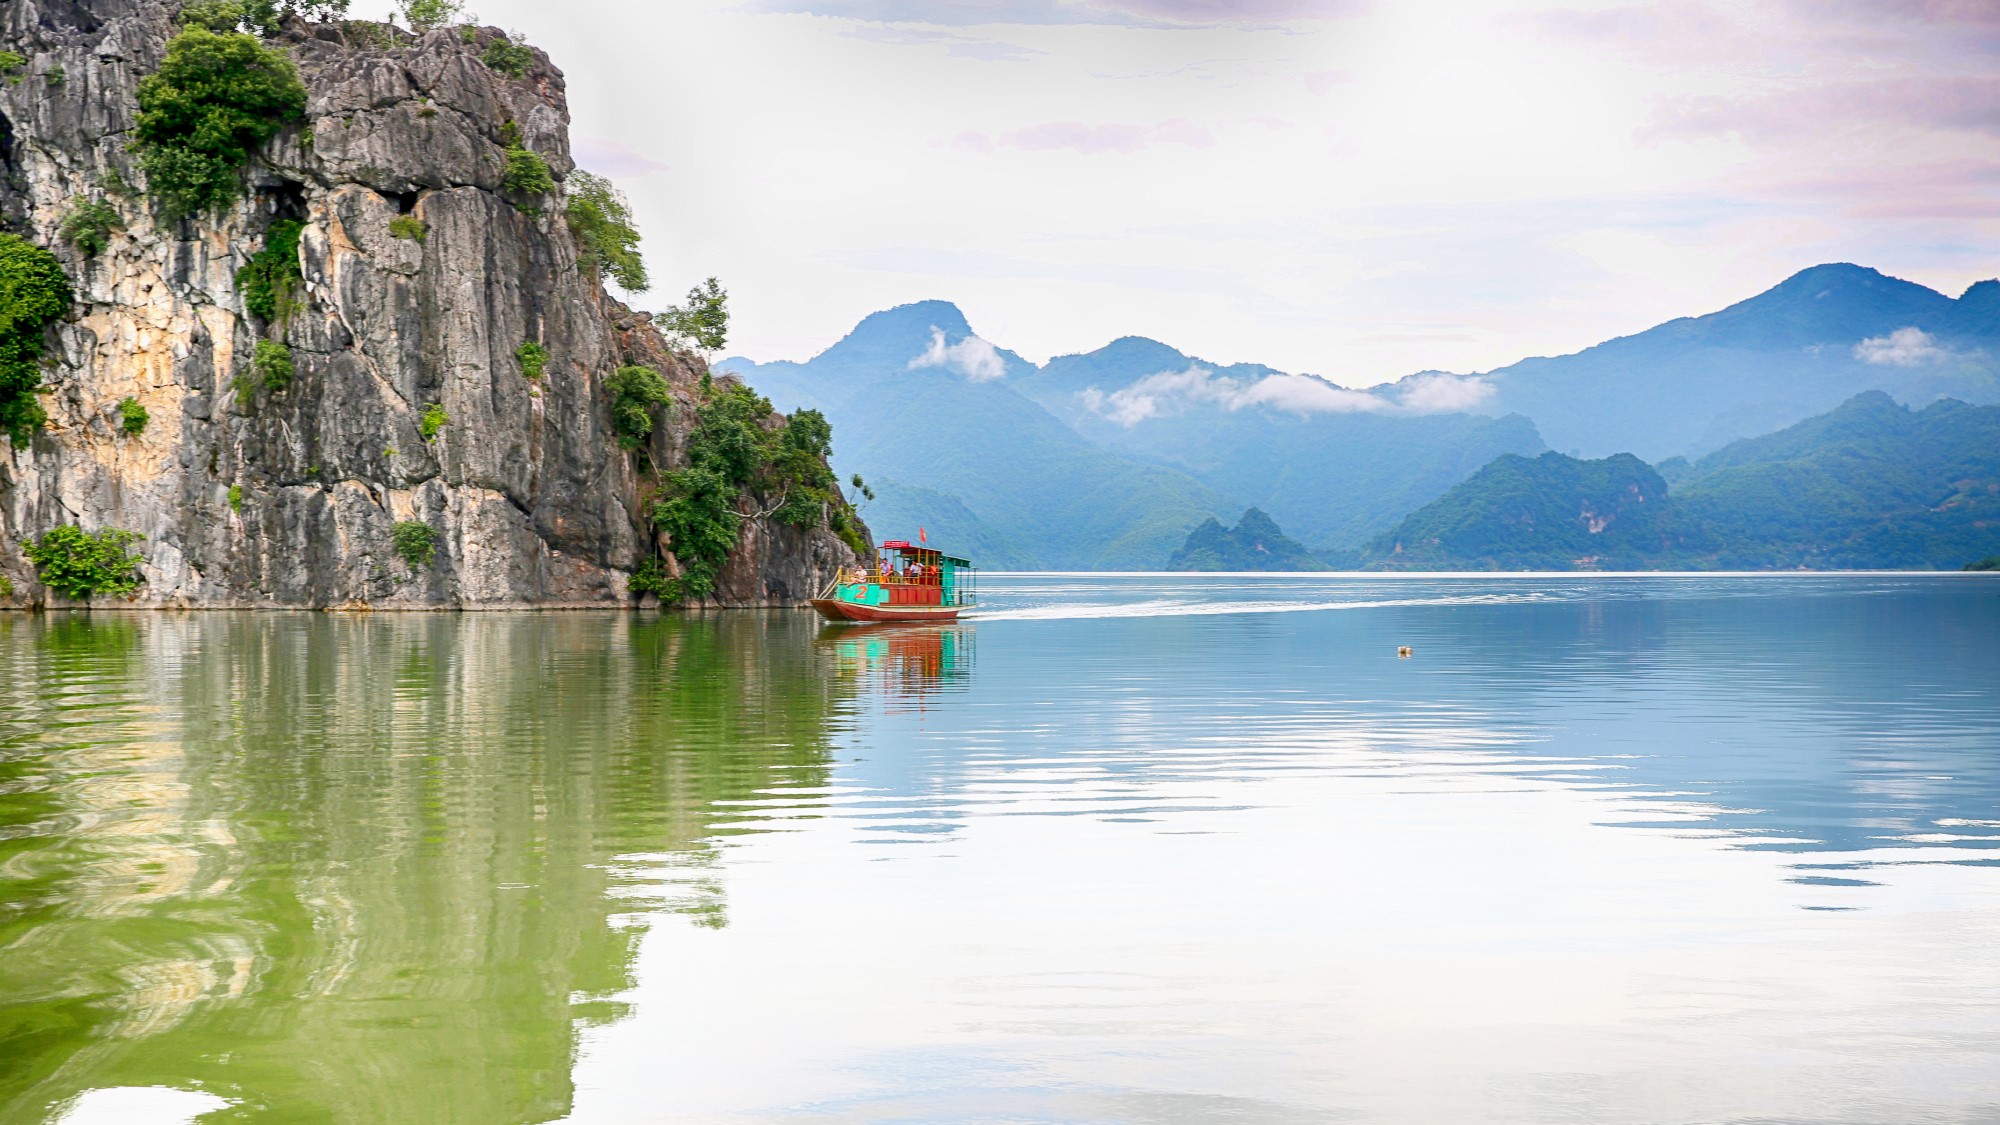 Hồ Sông Đà được mệnh danh là Hạ Long thu nhỏ với những ngọn núi đá mọc lên giữa lòng hồ.